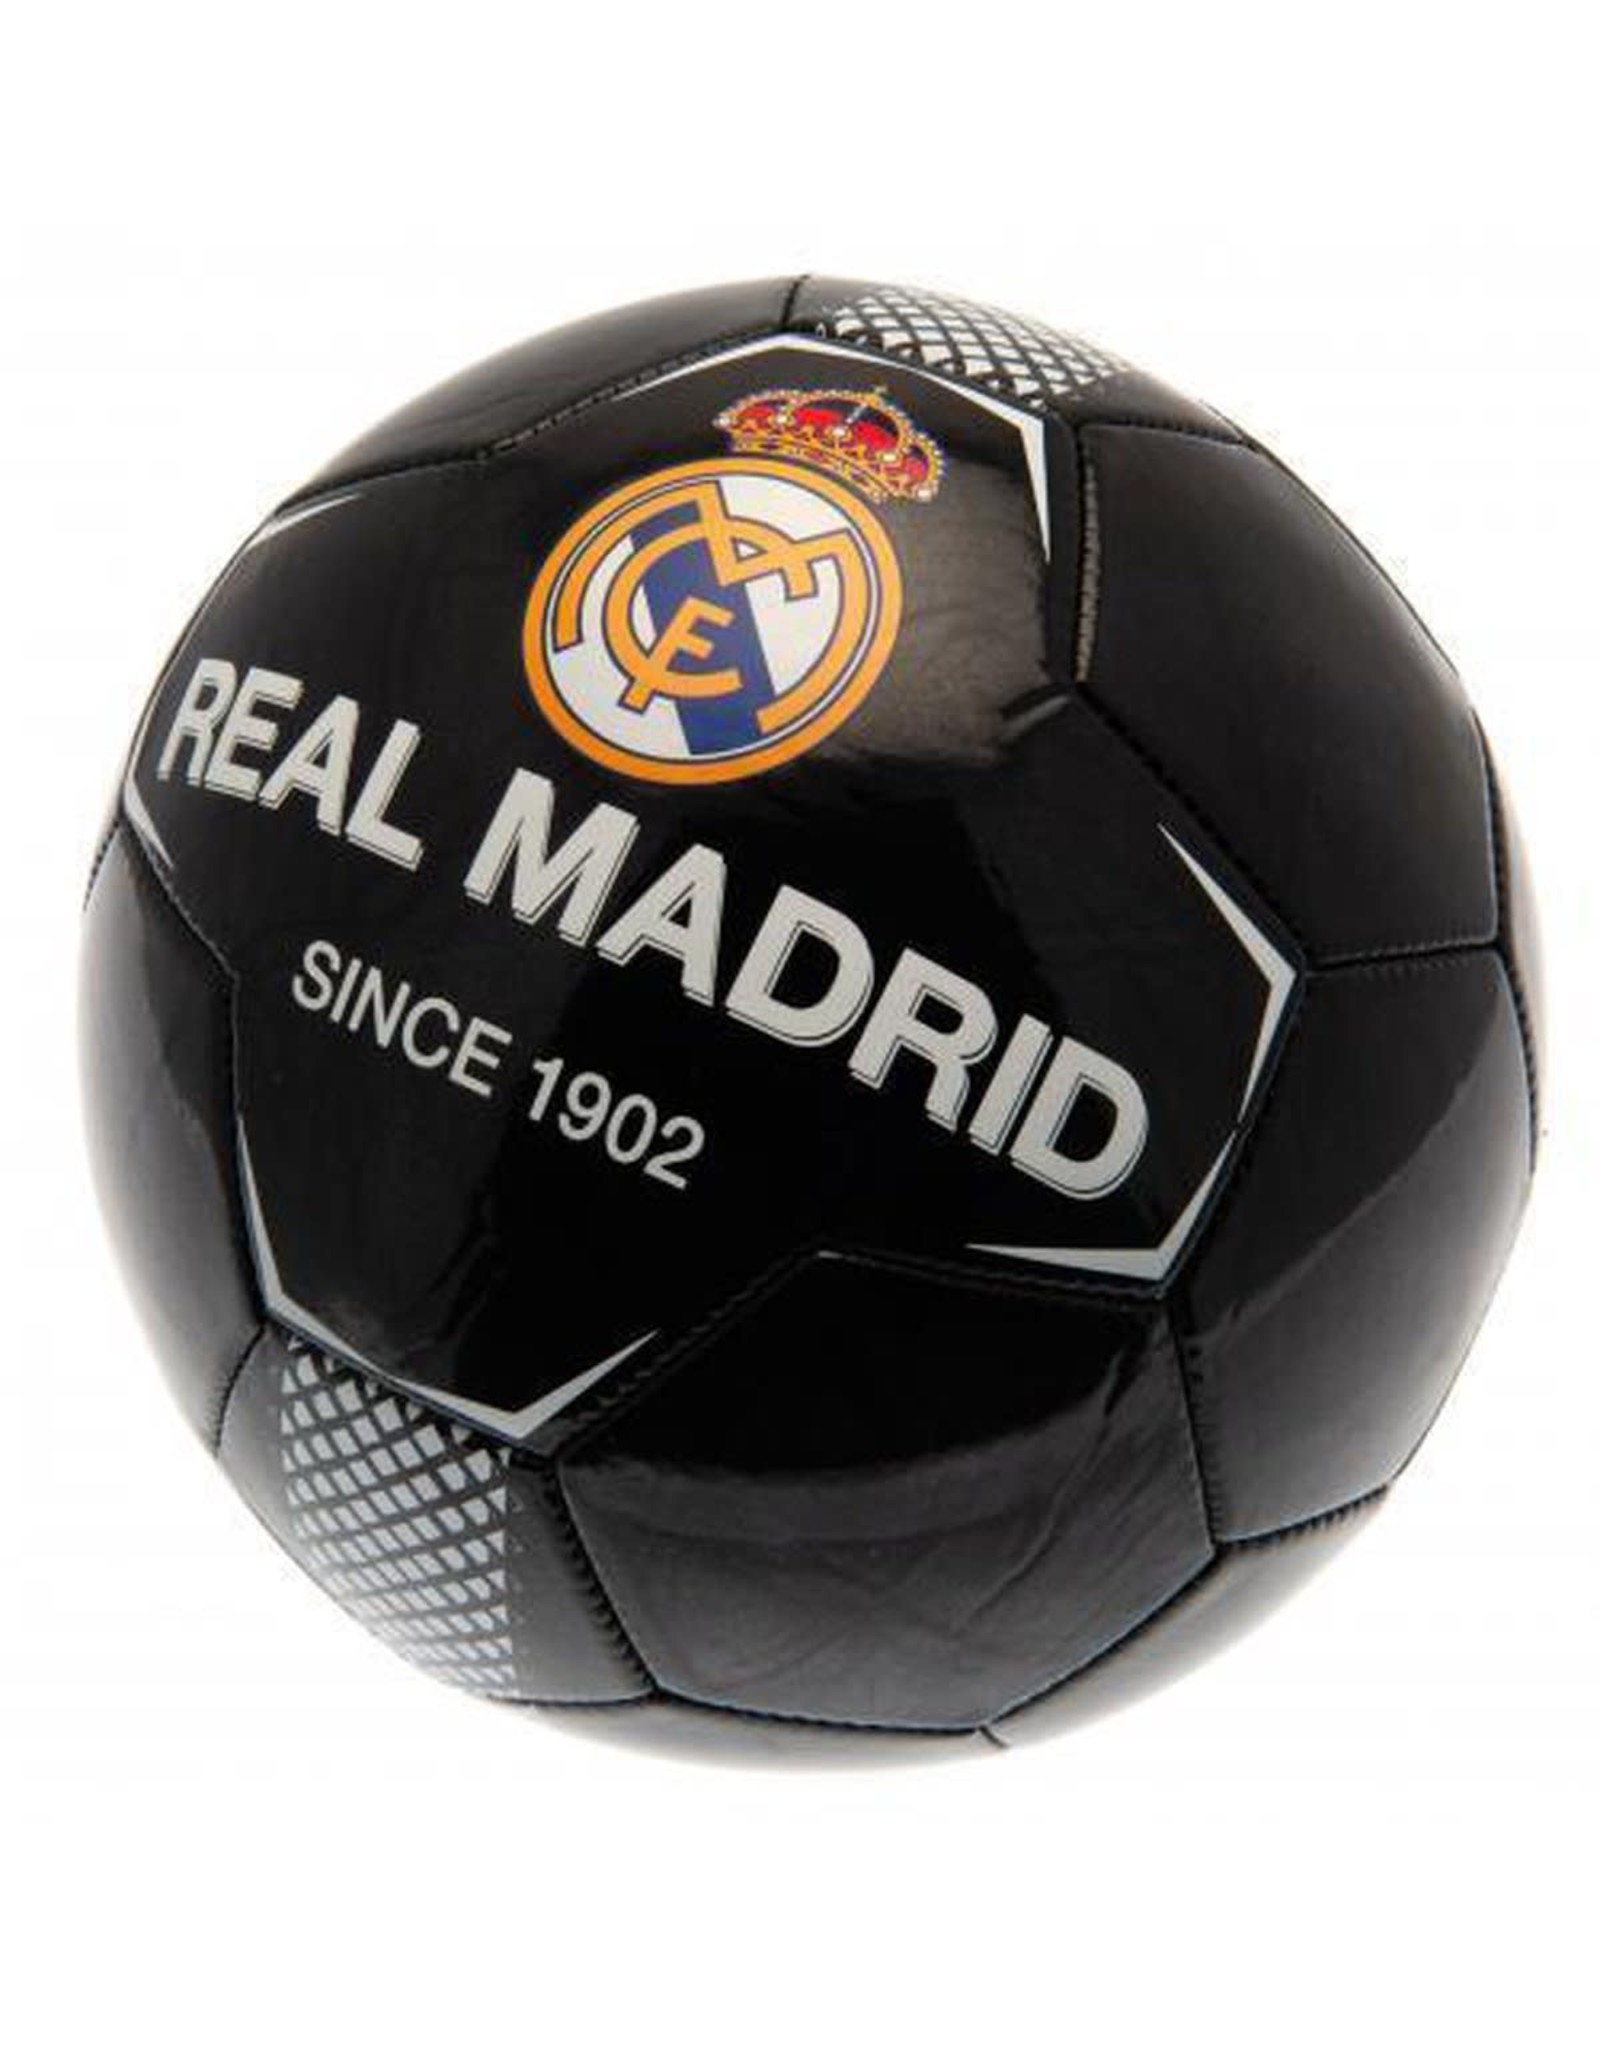 Кожаный мяч купить. Мяч футбольный Реал Мадрид. Мяч футбольный адидас Реал Мадрид. Сувенирный мяч Реал Мадрид. Мяч футбольный Торрес клаб.